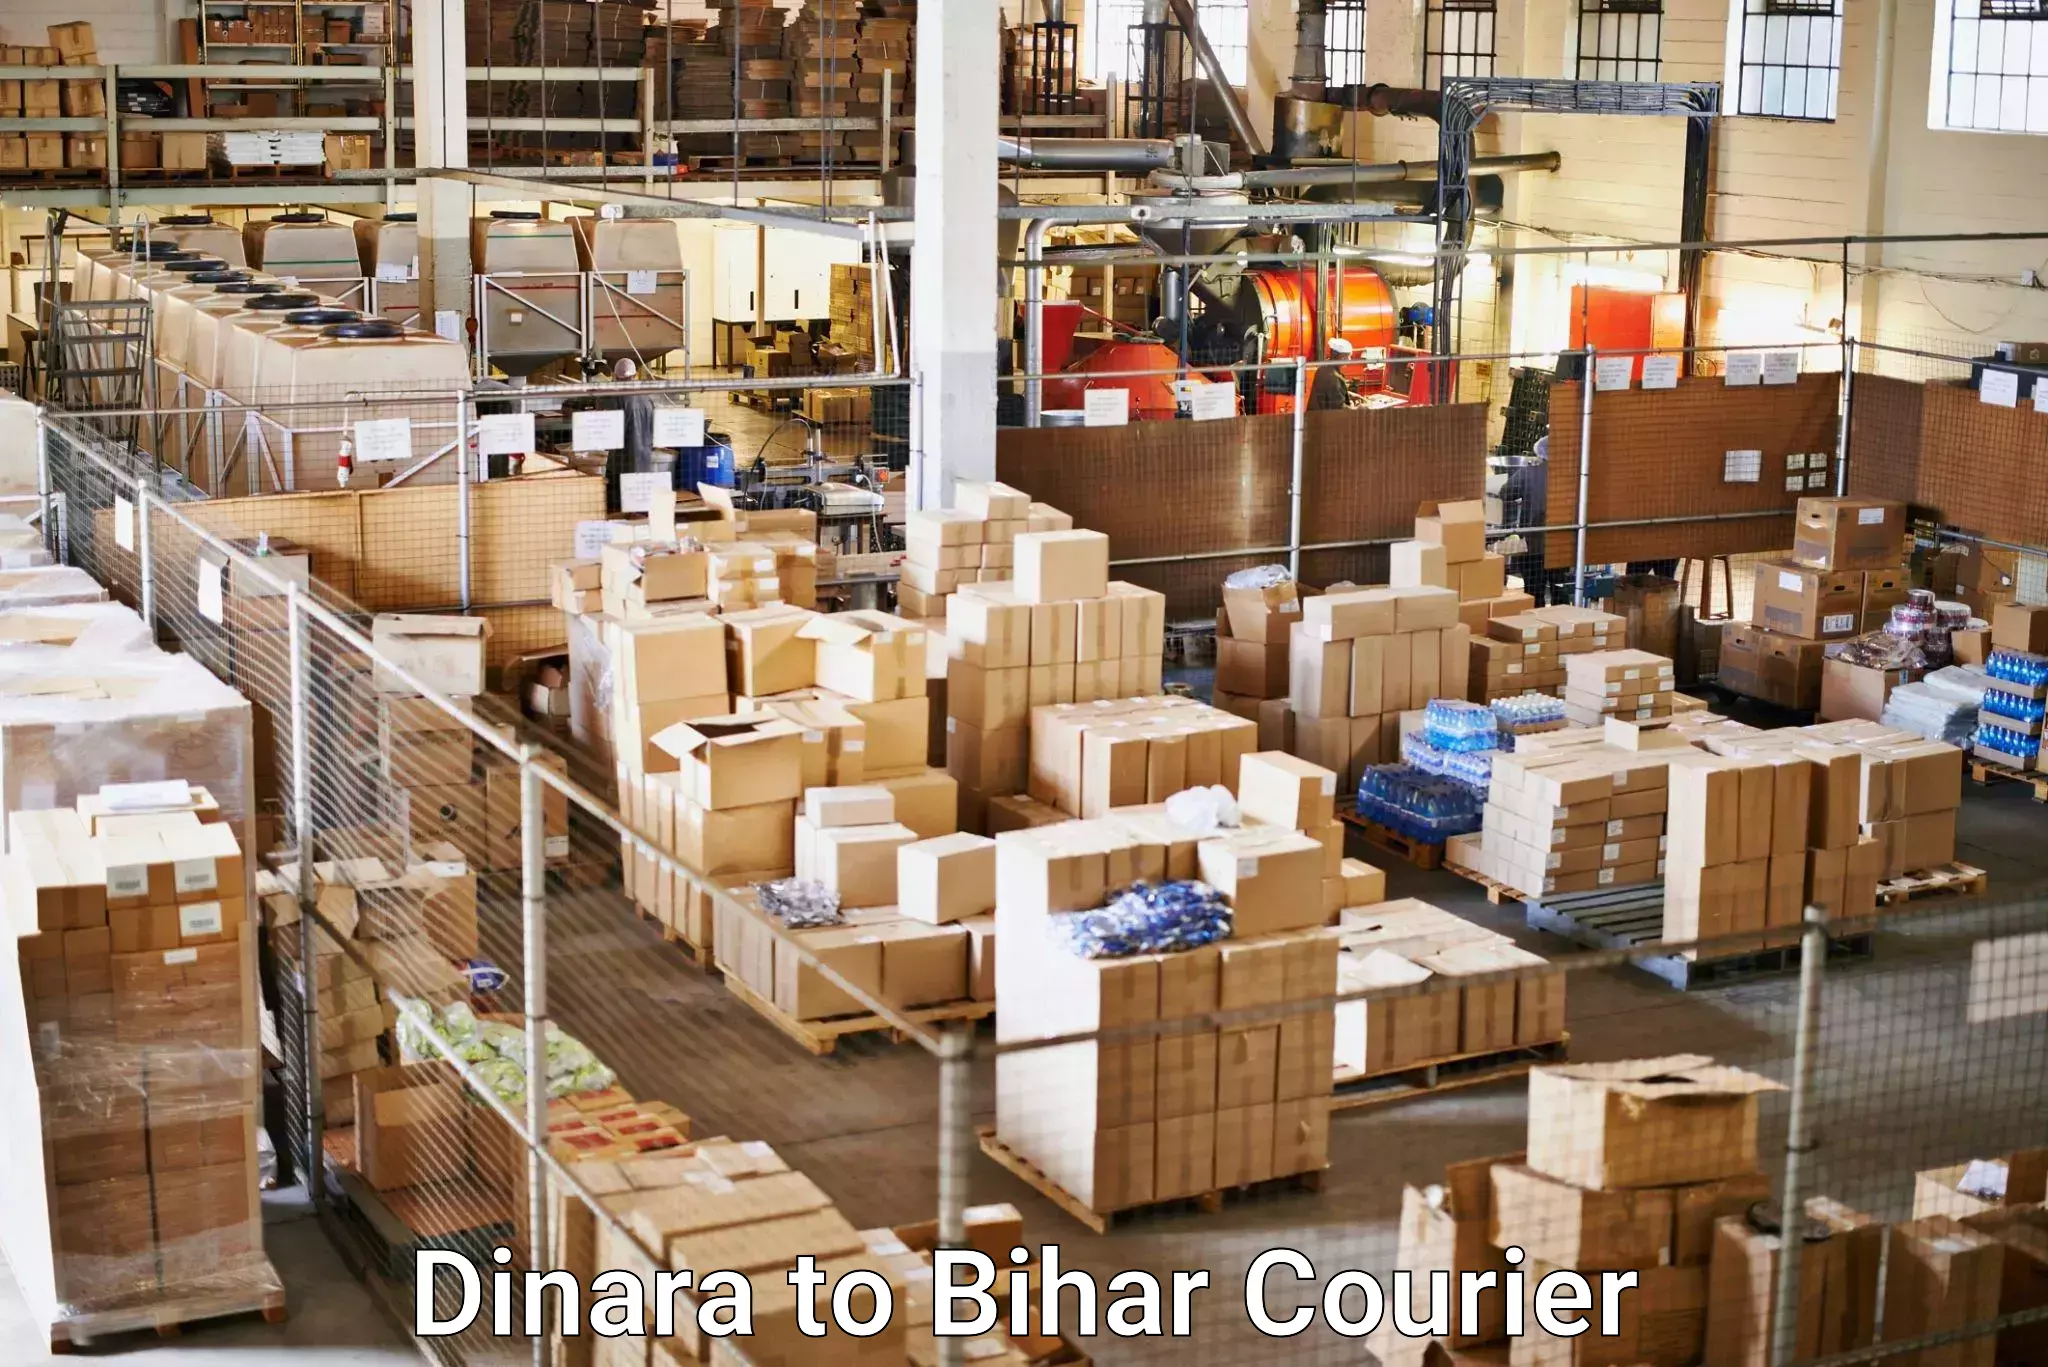 Fast shipping solutions Dinara to Patna